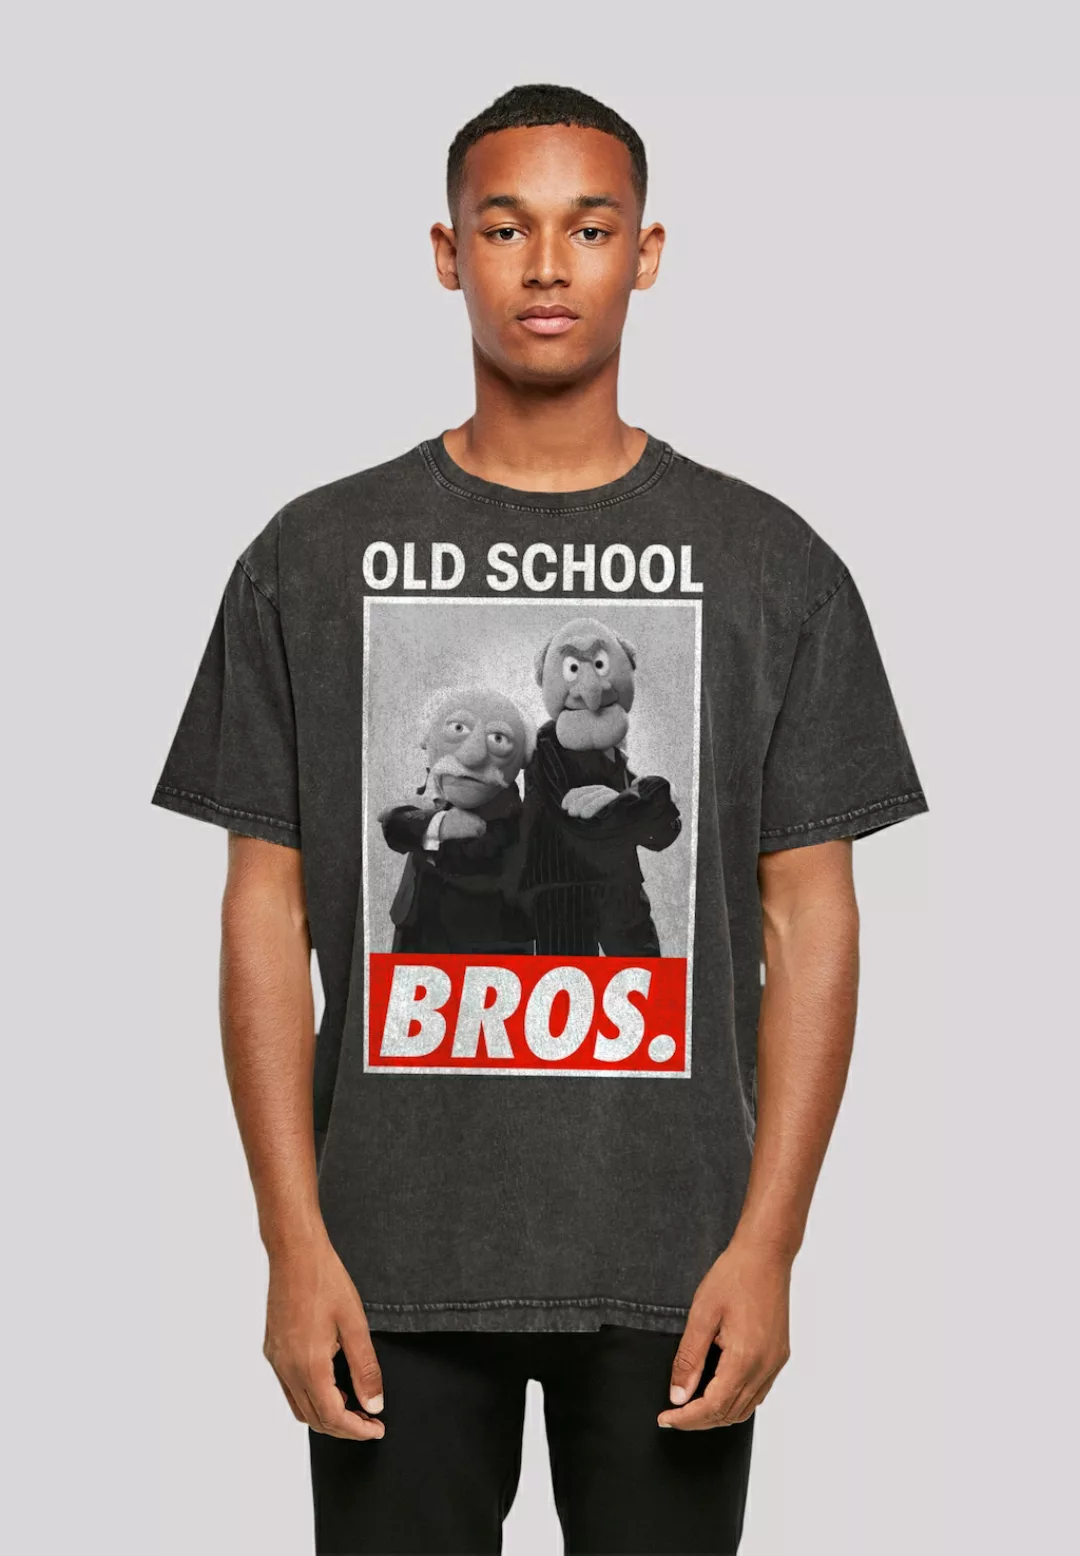 F4NT4STIC T-Shirt "Disney Muppets Old School Bros." günstig online kaufen